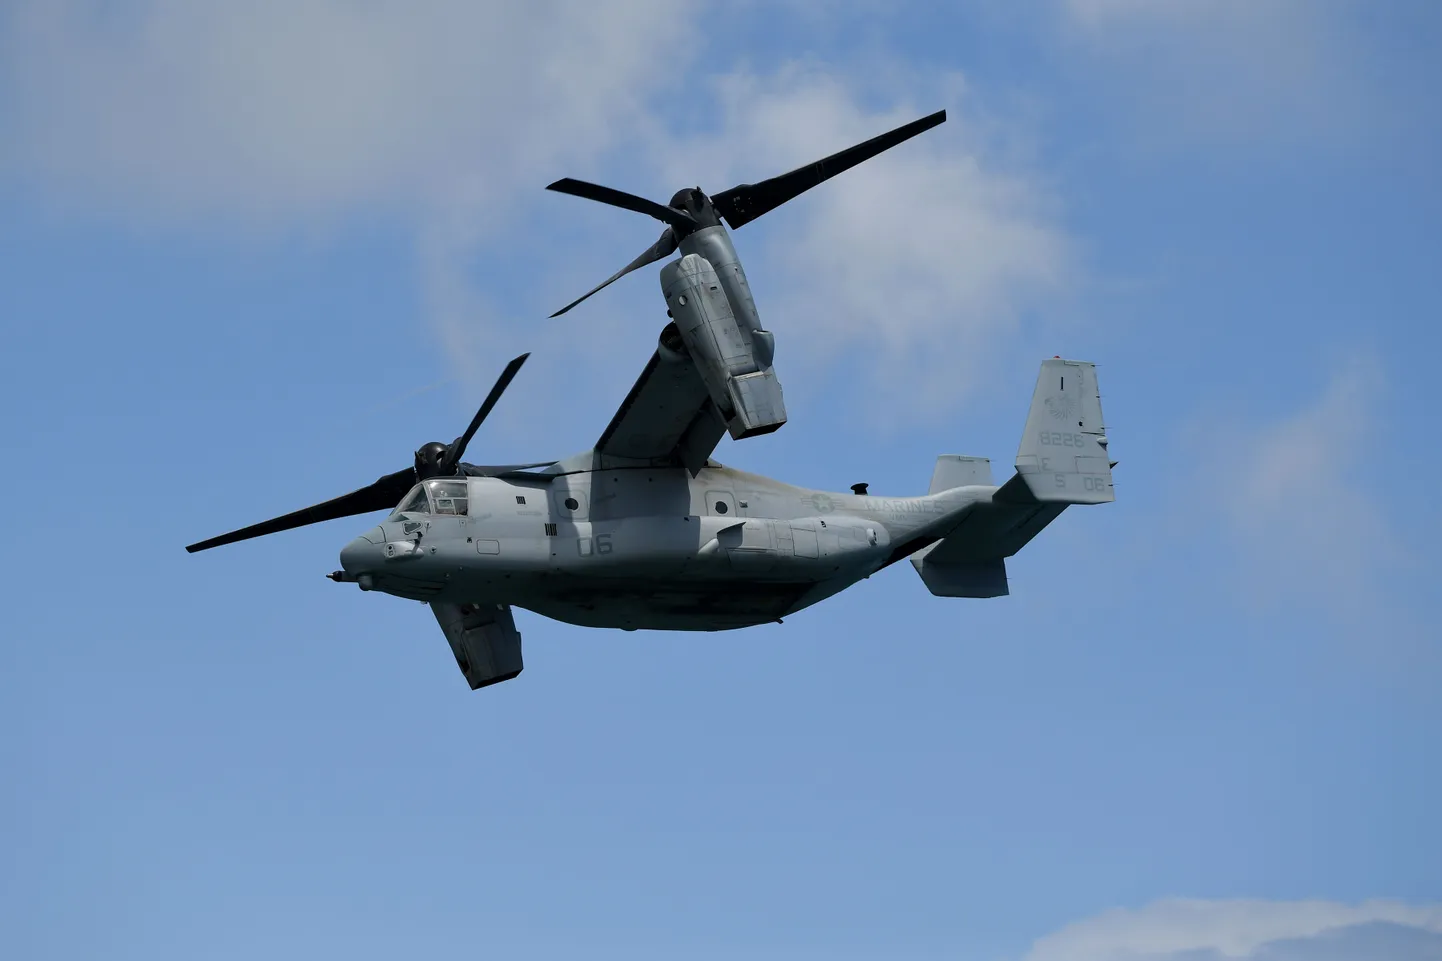 Ameerika Ühendriikide merejalaväe Bell Boeing V-22 Osprey kasutab õhku tõusmiseks ja liikumiseks muudetava nurgaga propellereid.